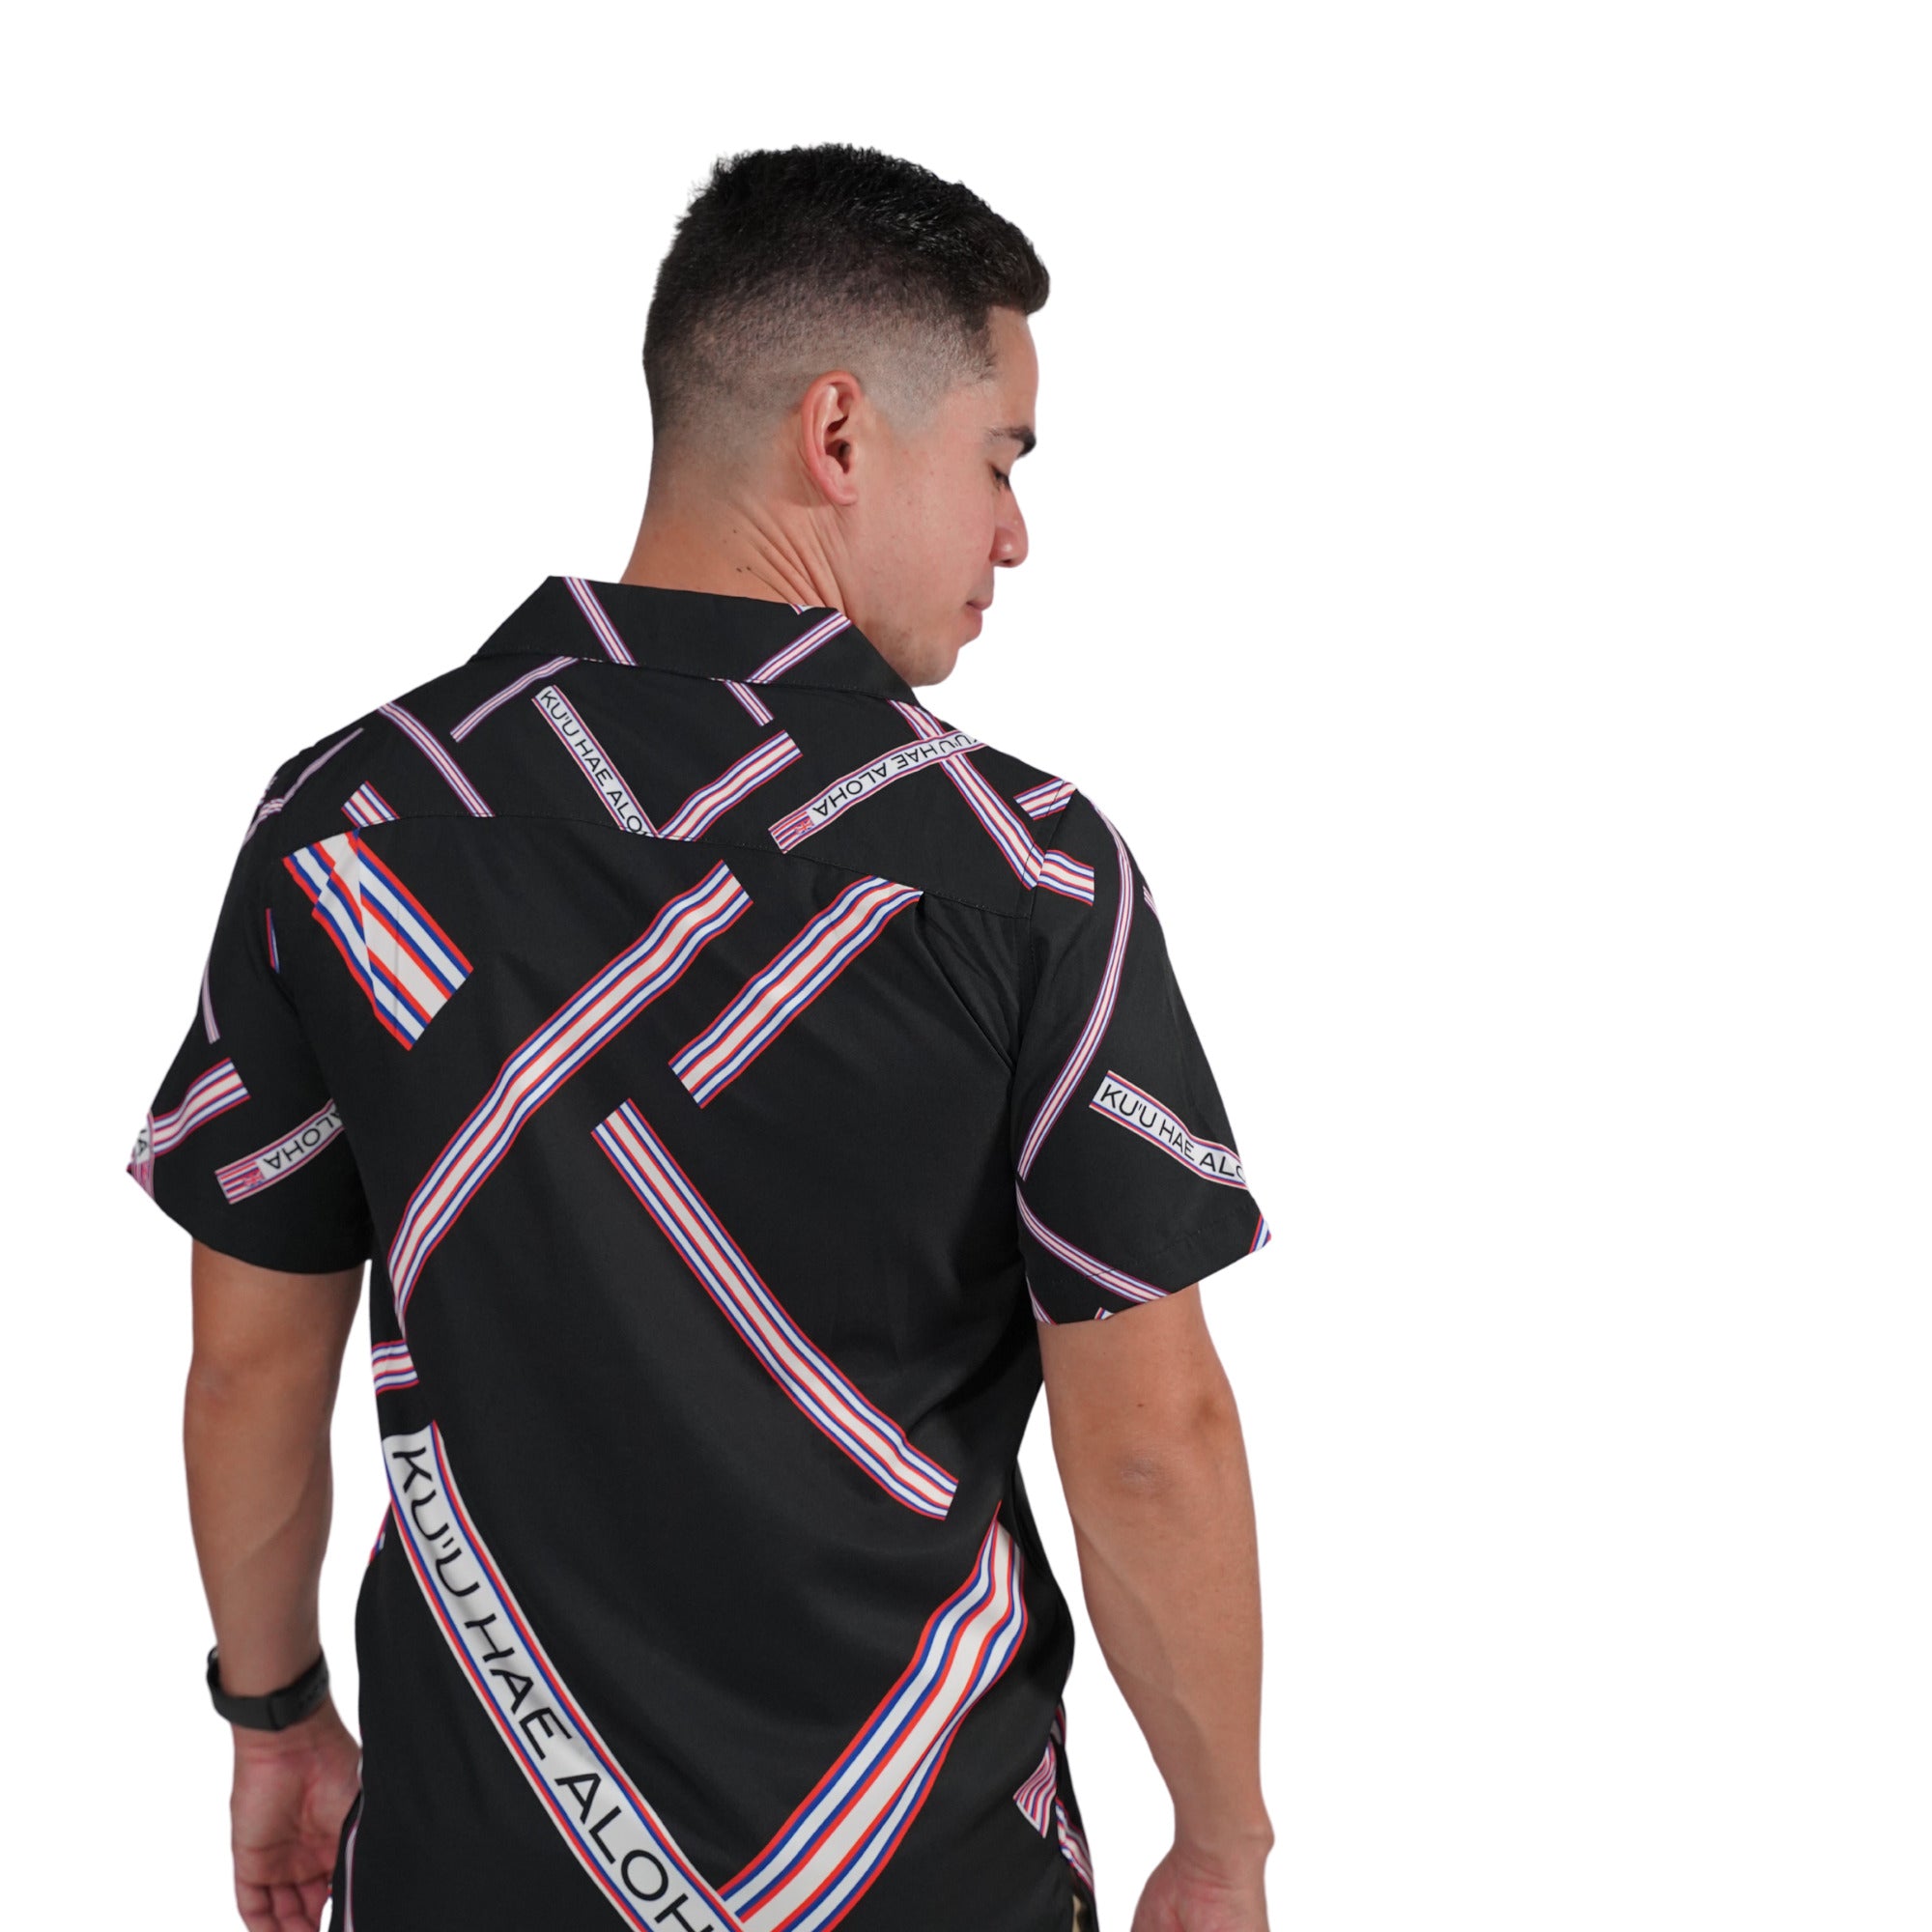 Pop-Up Mākeke - Kini Zamora - Kuʻu Hae Aloha Shirt with Pocket - Back View